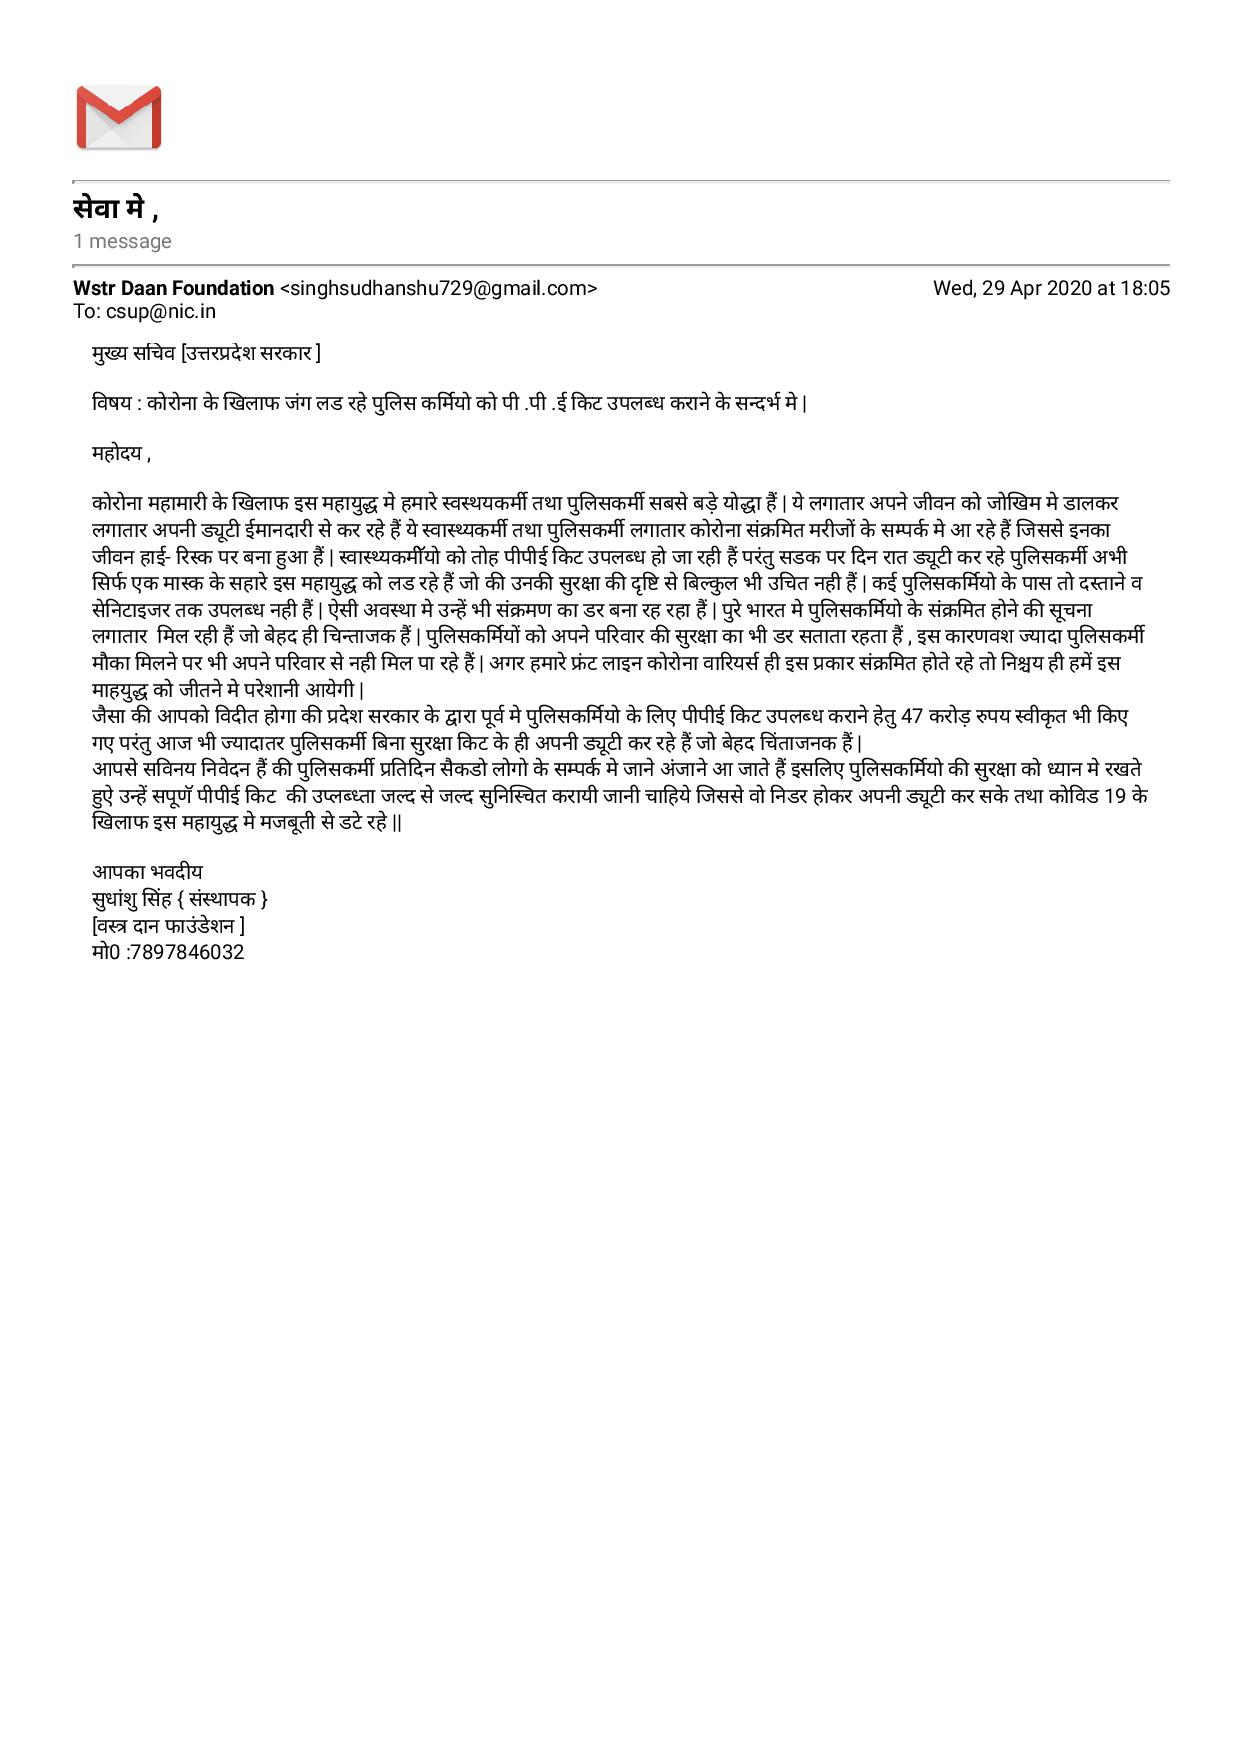 वाराणसी। कोरोना महामारी के बढ़ते प्रकोप को देखते हुये पुलिस कर्मियों की सुरक्षा का हवाला देते हुए वस्त्र दान फाउंडेशन के संस्थापक सुधांशु सिंह ने प्रदेश के मुख्यमंत्री व प्रमुख सचिव को ईमेल द्वारा पत्र भेजकर ड्यूटी पर लगे पुलिस कर्मियो के लिय ज्यादा से ज्यादा पी.पी.ई. (पर्सनल प्रोटेक्शन इक्विपमेंट) किट उपलब्ध कराने की माँग की हैं। उनके अनुसार कोरोना महामारी के खिलाफ इस महायुद्ध में हमारे स्वास्थ्य कर्मी तथा पुलिस कर्मी सबसे बड़े योद्धा हैं। ये लगातार अपने जीवन को जोखिम में डालकर लगातार अपनी ड्यूटी ईमानदारी से कर रहे हैं। ये स्वास्थ कर्मी तथा पुलिस कर्मी लगातार कोरोना संक्रमित मरीजों के सम्पर्क में आ रहे हैं जिससे इनका जीवन हाई-रिस्क पर बना हुआ हैं।